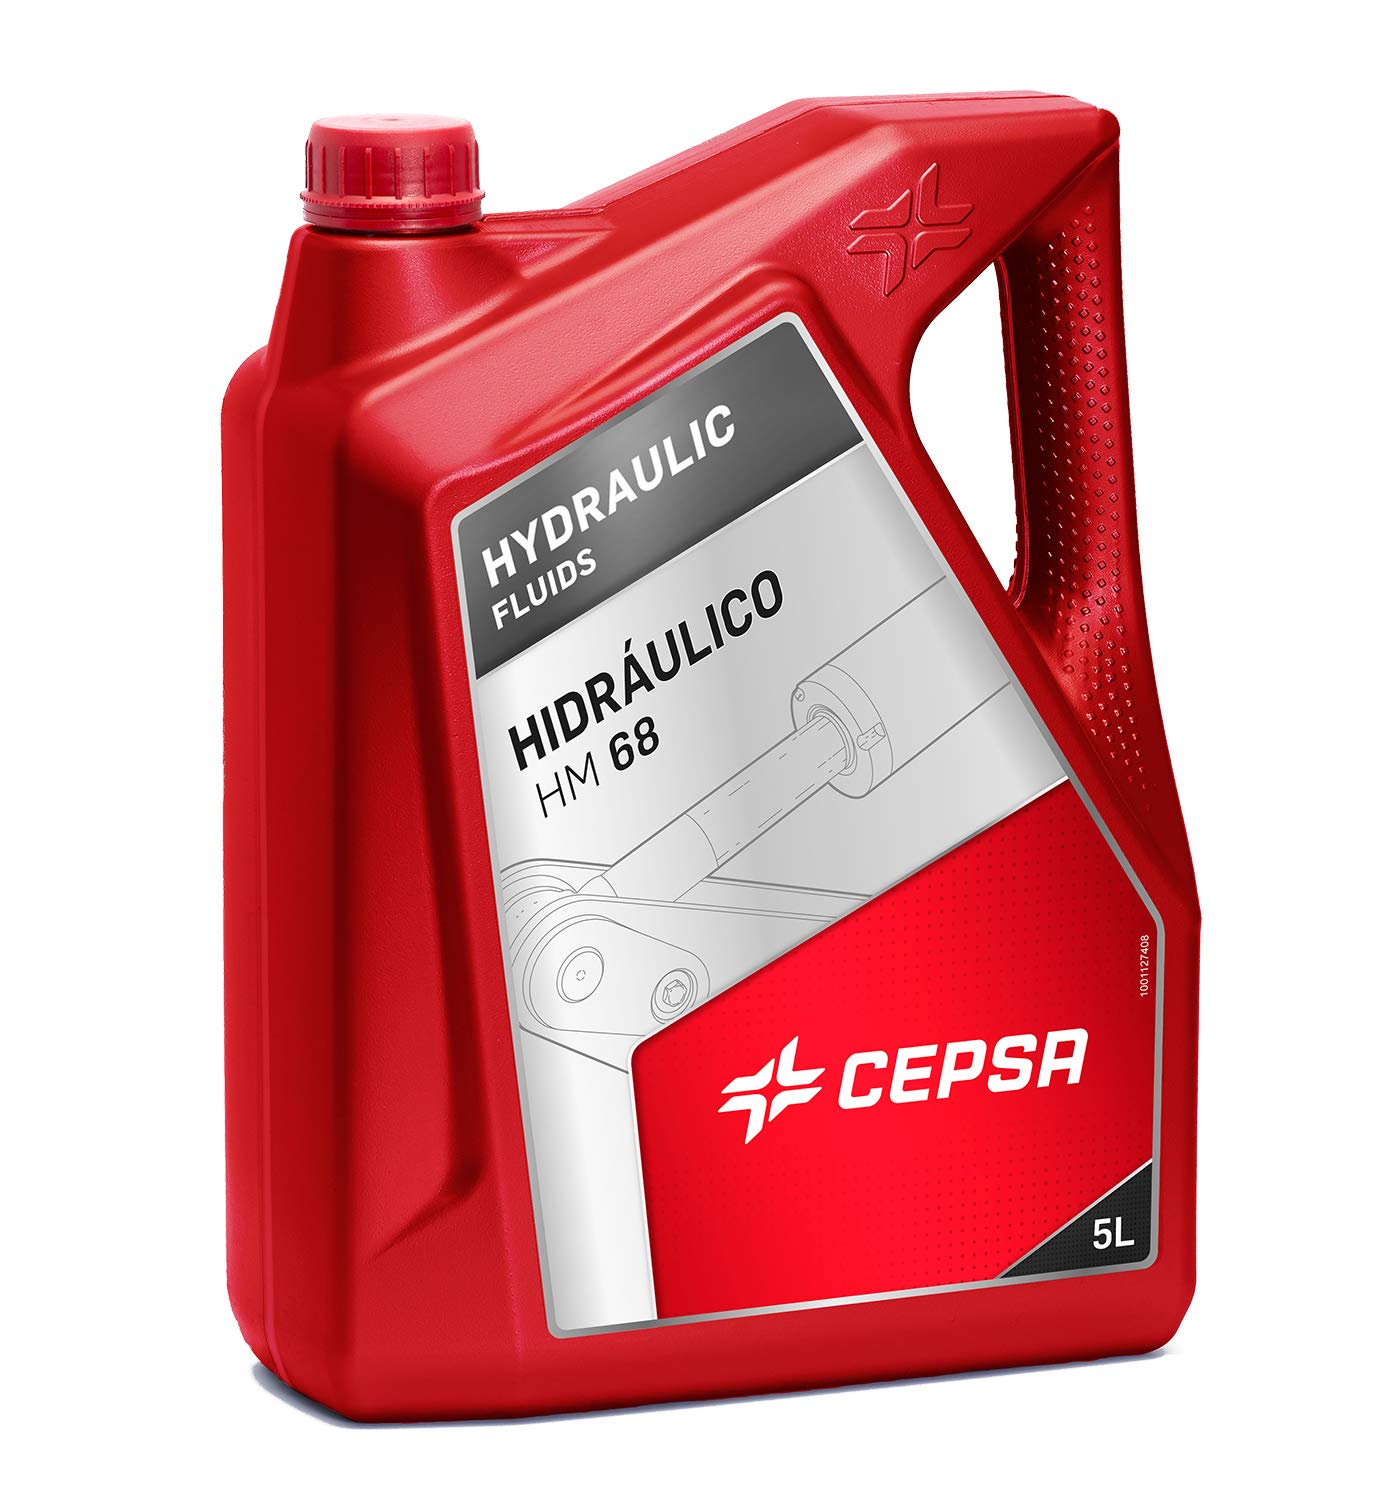 CEPSA 640413072 Mineralöl für Hydrauliksysteme HIDRAULICO HM 68, 5 Liter